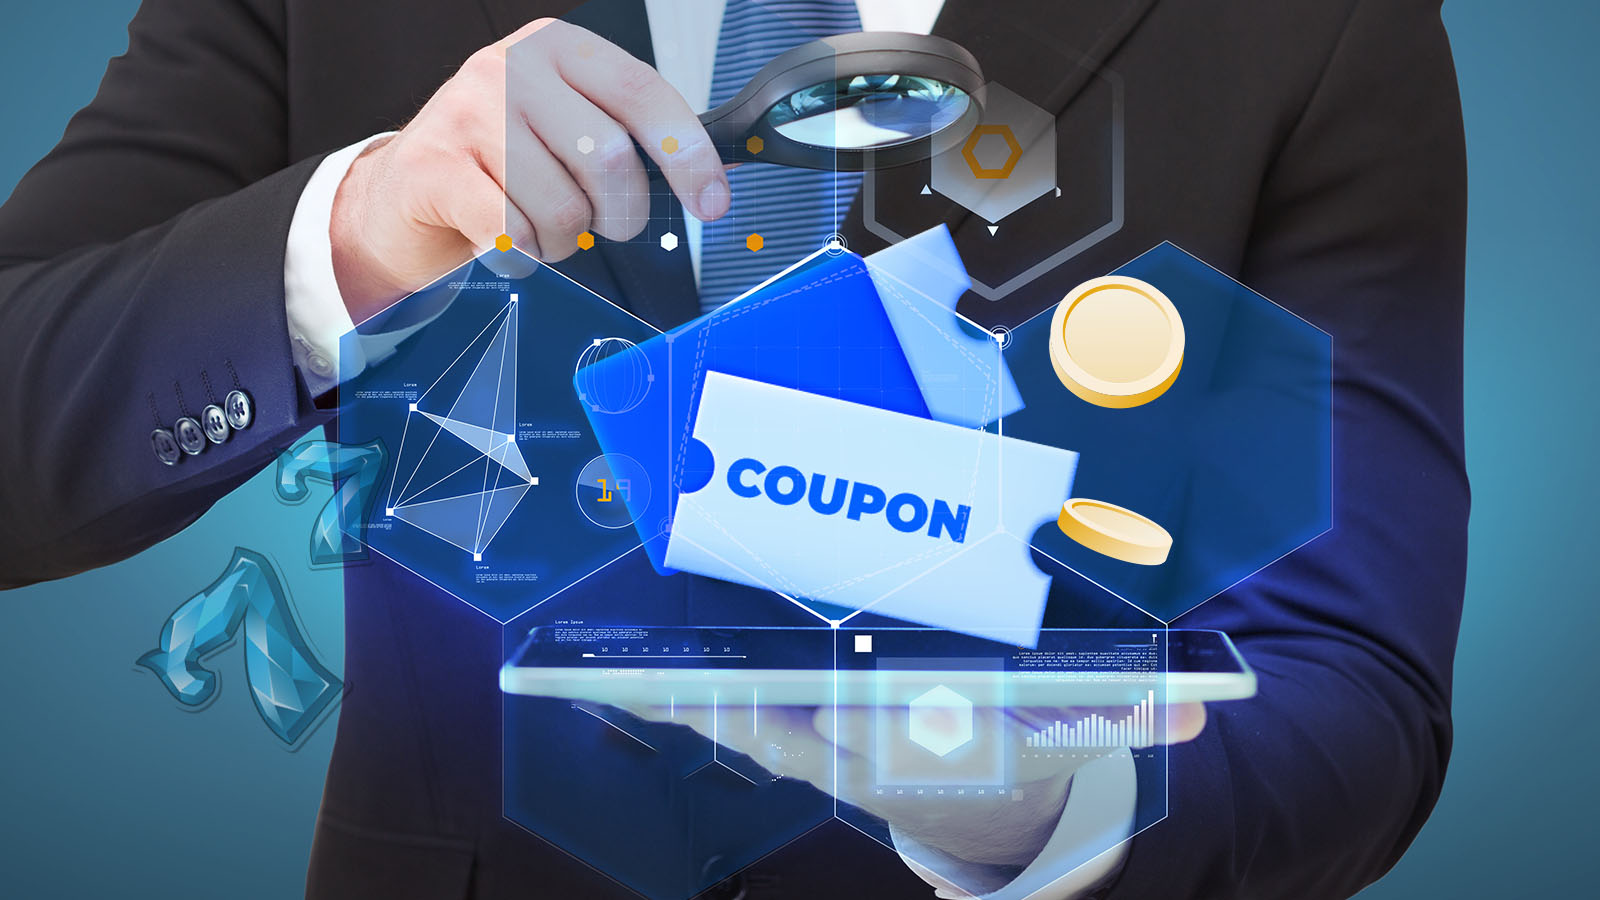 Understanding how coupons work